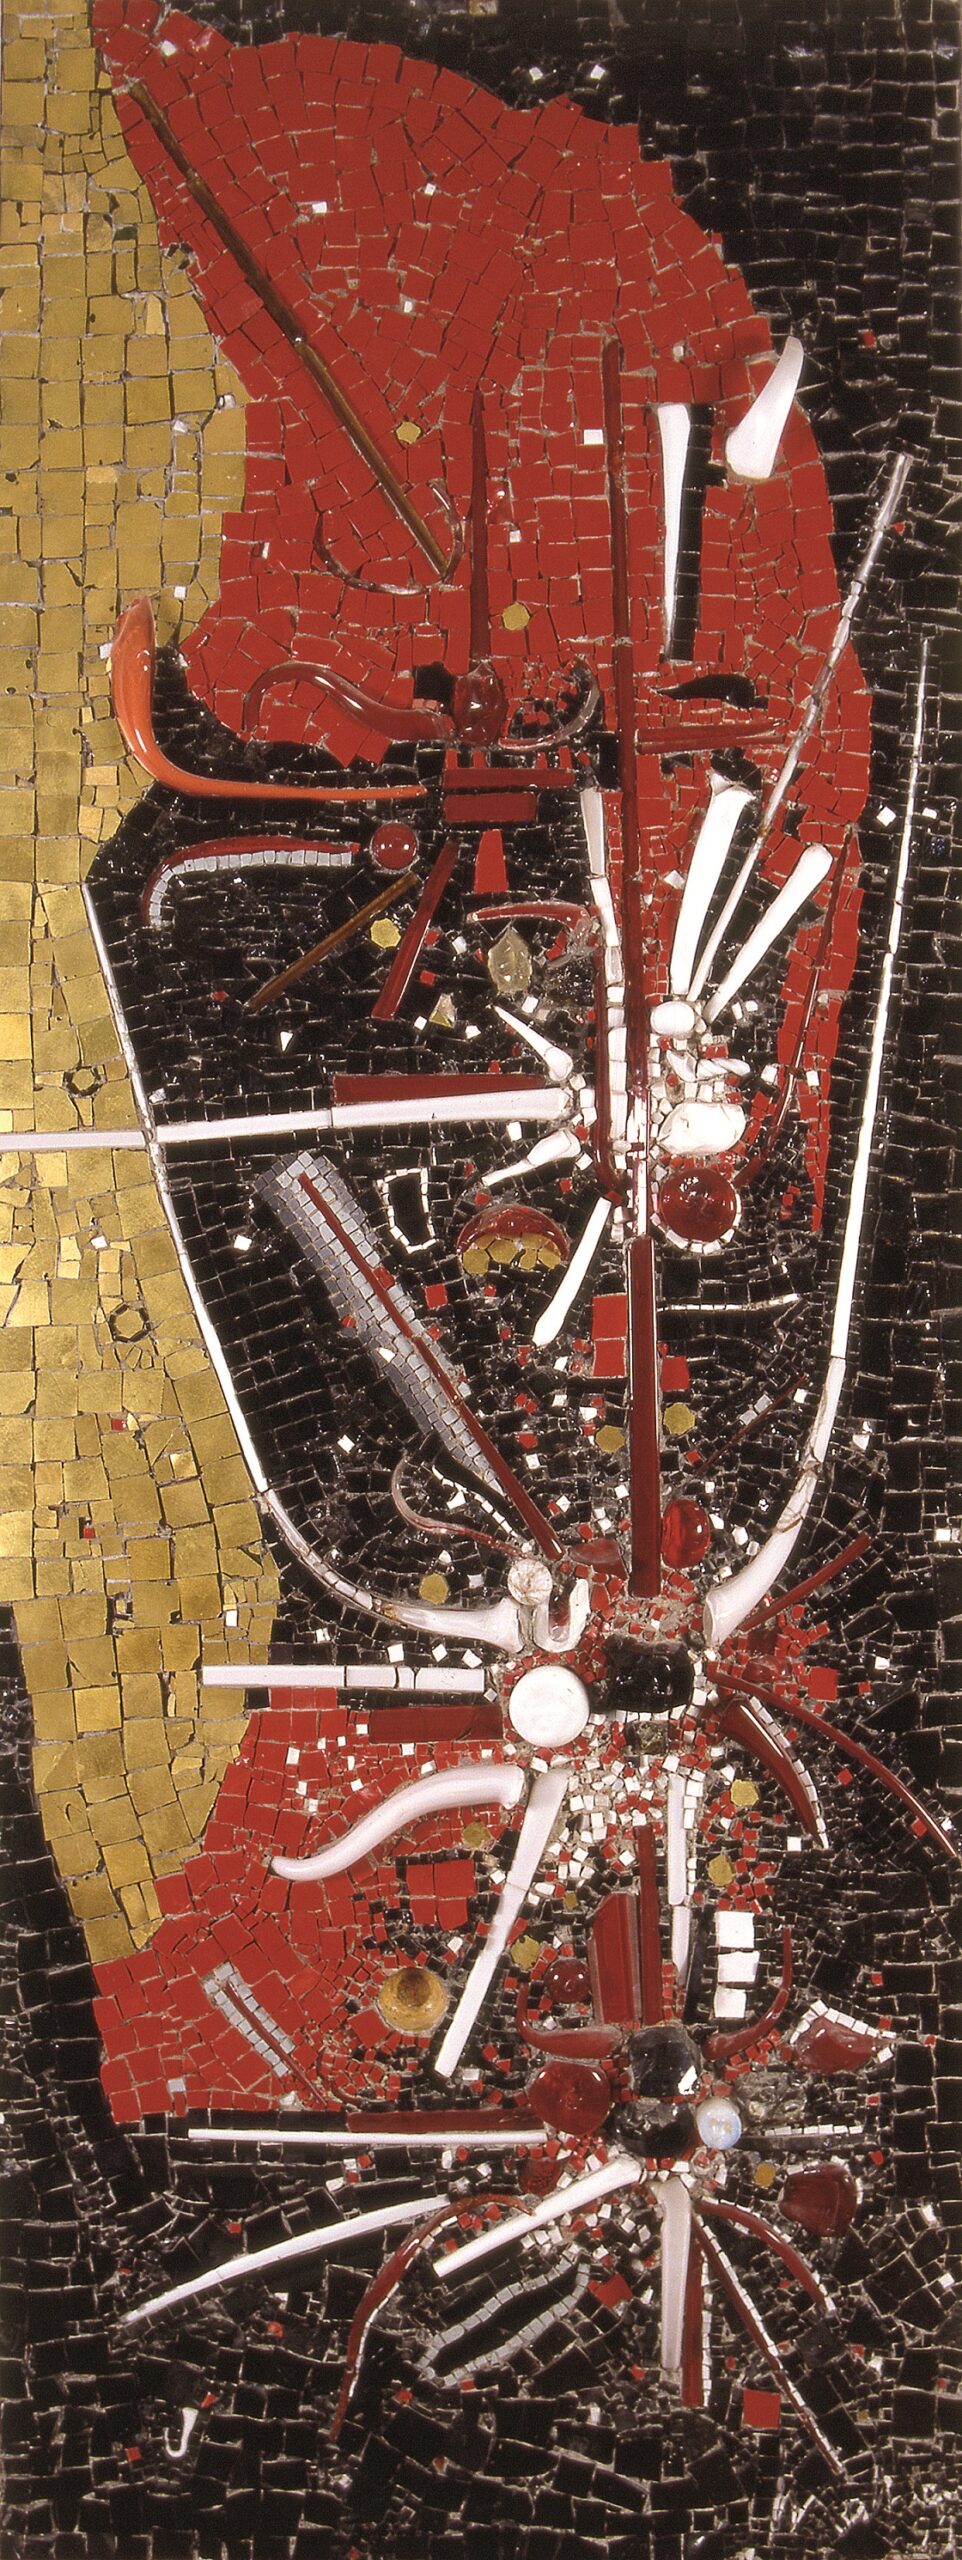 Georges Mathieu, Gruppo Mosaicisti (con l’aiuto del), Omaggio a Odoacre, 1959, opera musiva tessellata paste vitree, vetro soffiato, vetro a foglia metallica oro, smalti su pannello in cemento 241 x 92,2 x 4 cm, Ravenna, MAR - Museo d’Arte della città di Ravenna